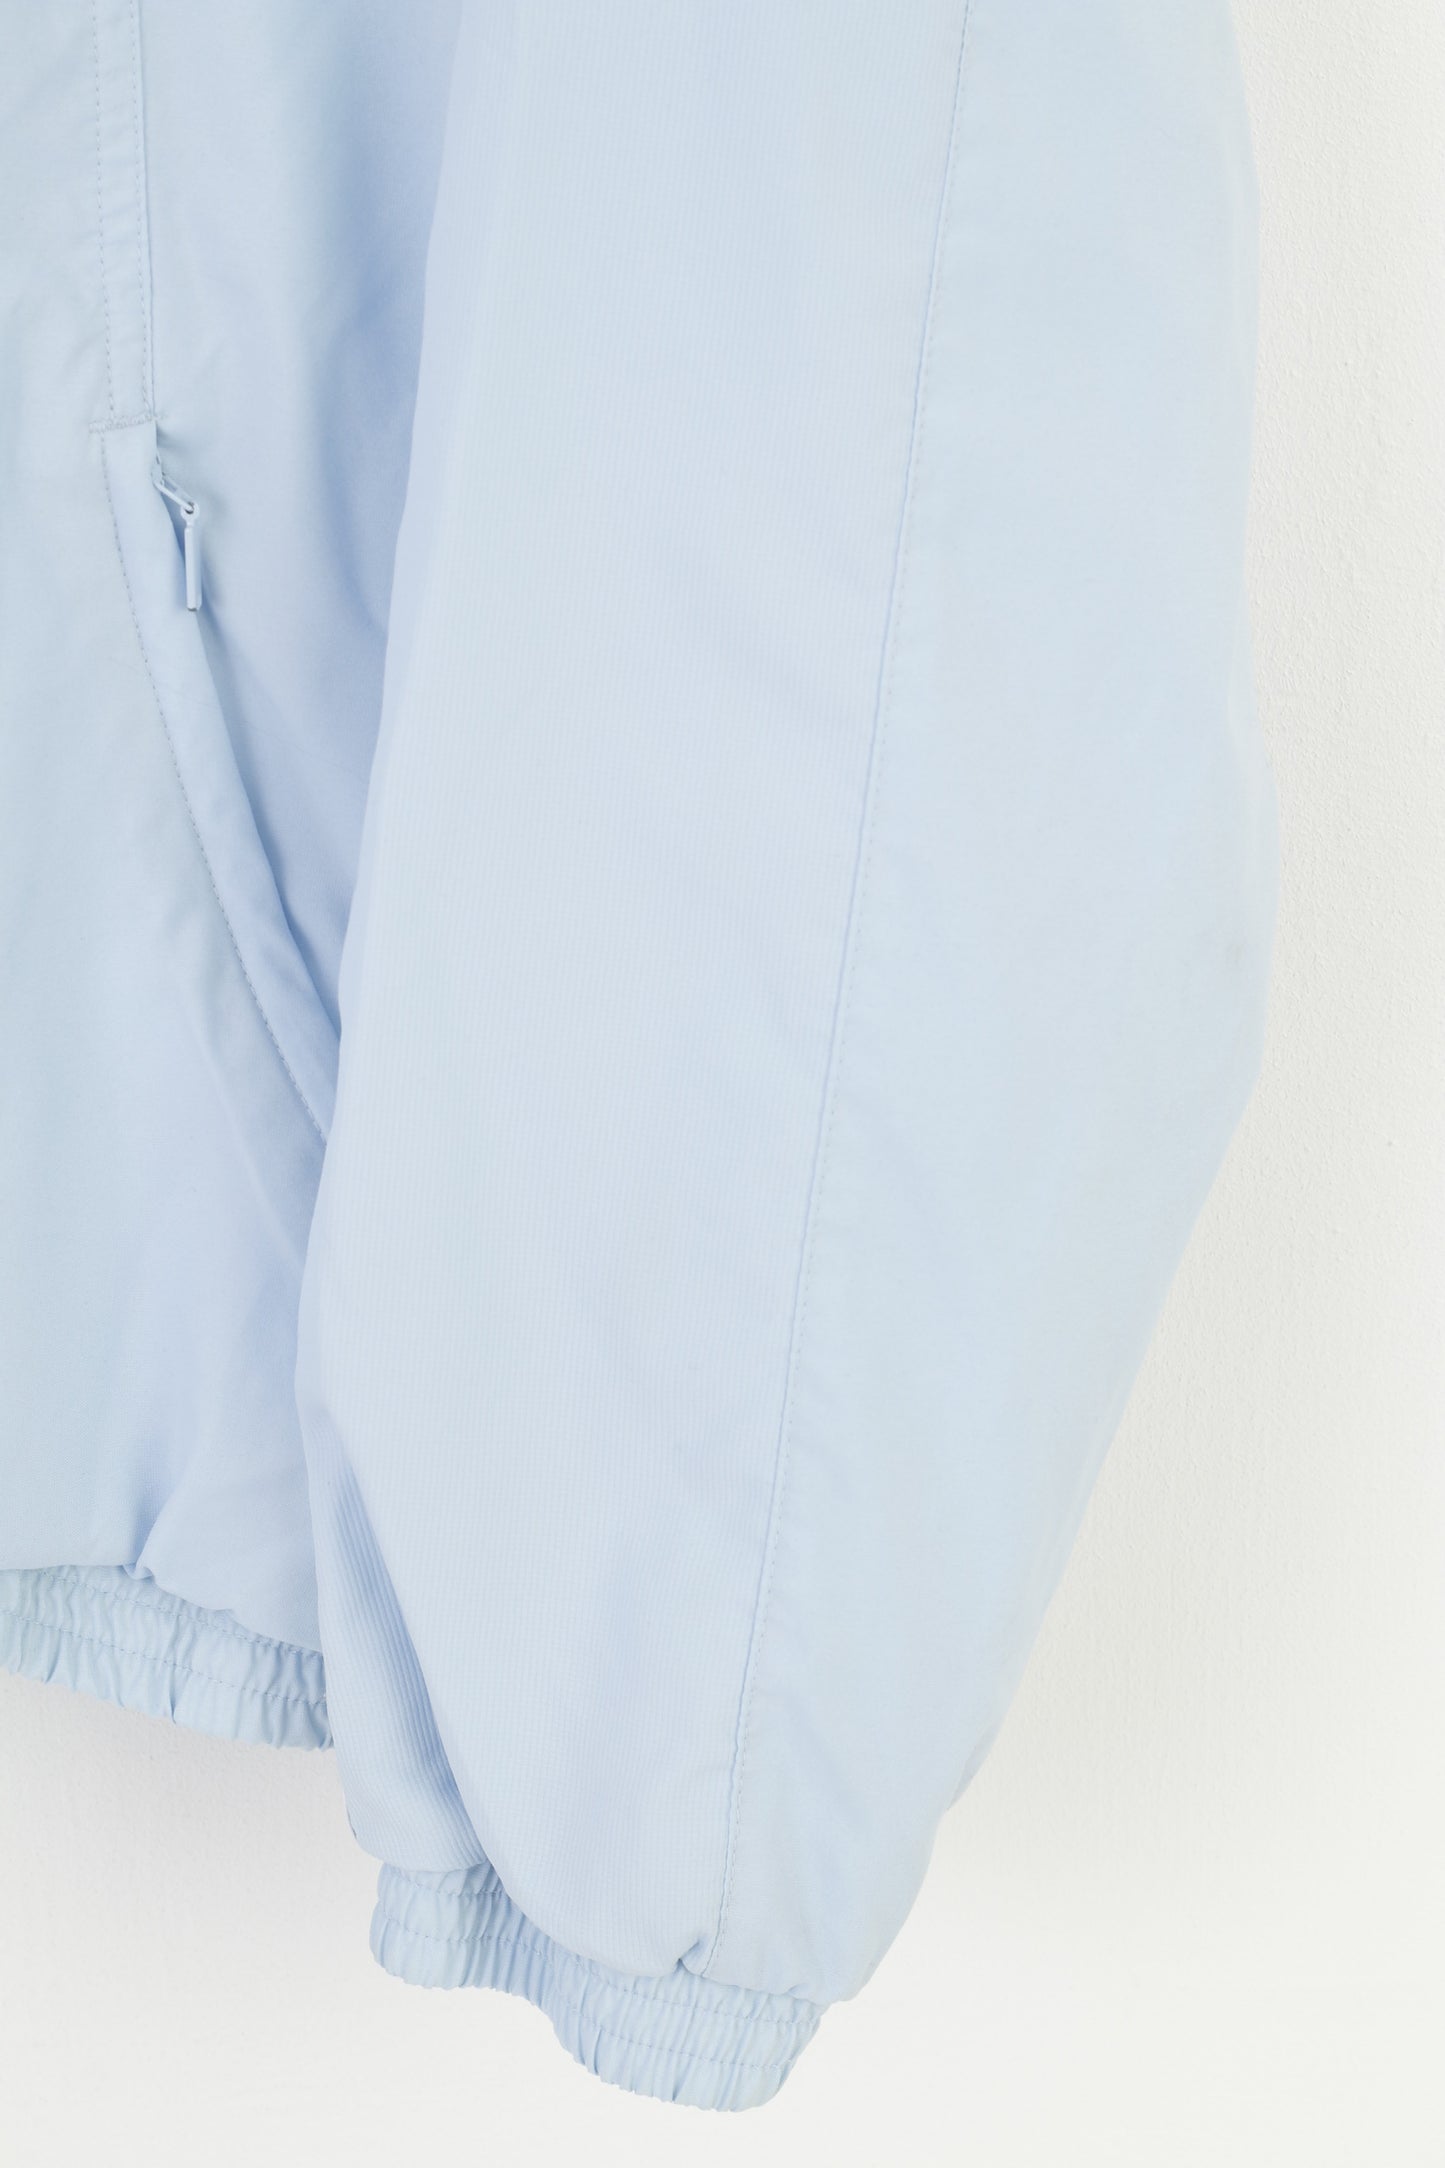 Adidas Men M Jacket Light Blue Sportswear Vtg Full Zipper Pockets Vintage 3 Stripes Outwear Top